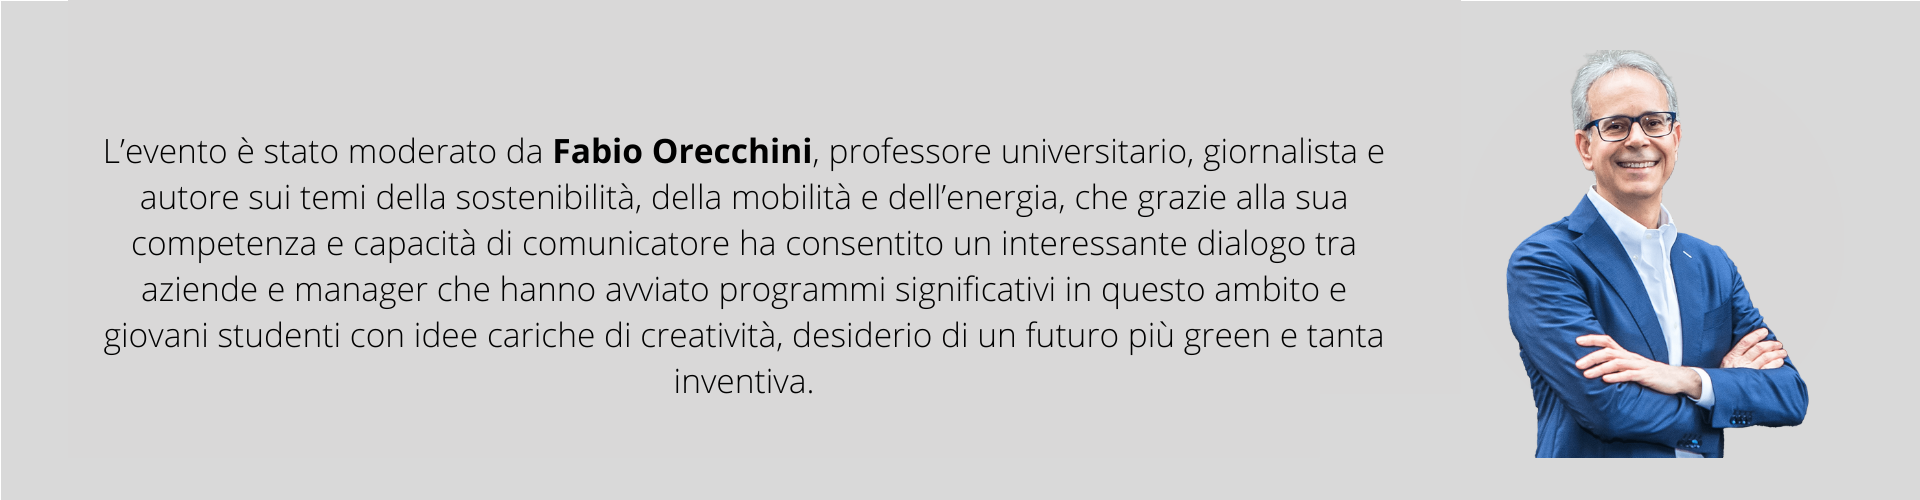 F. Orecchini